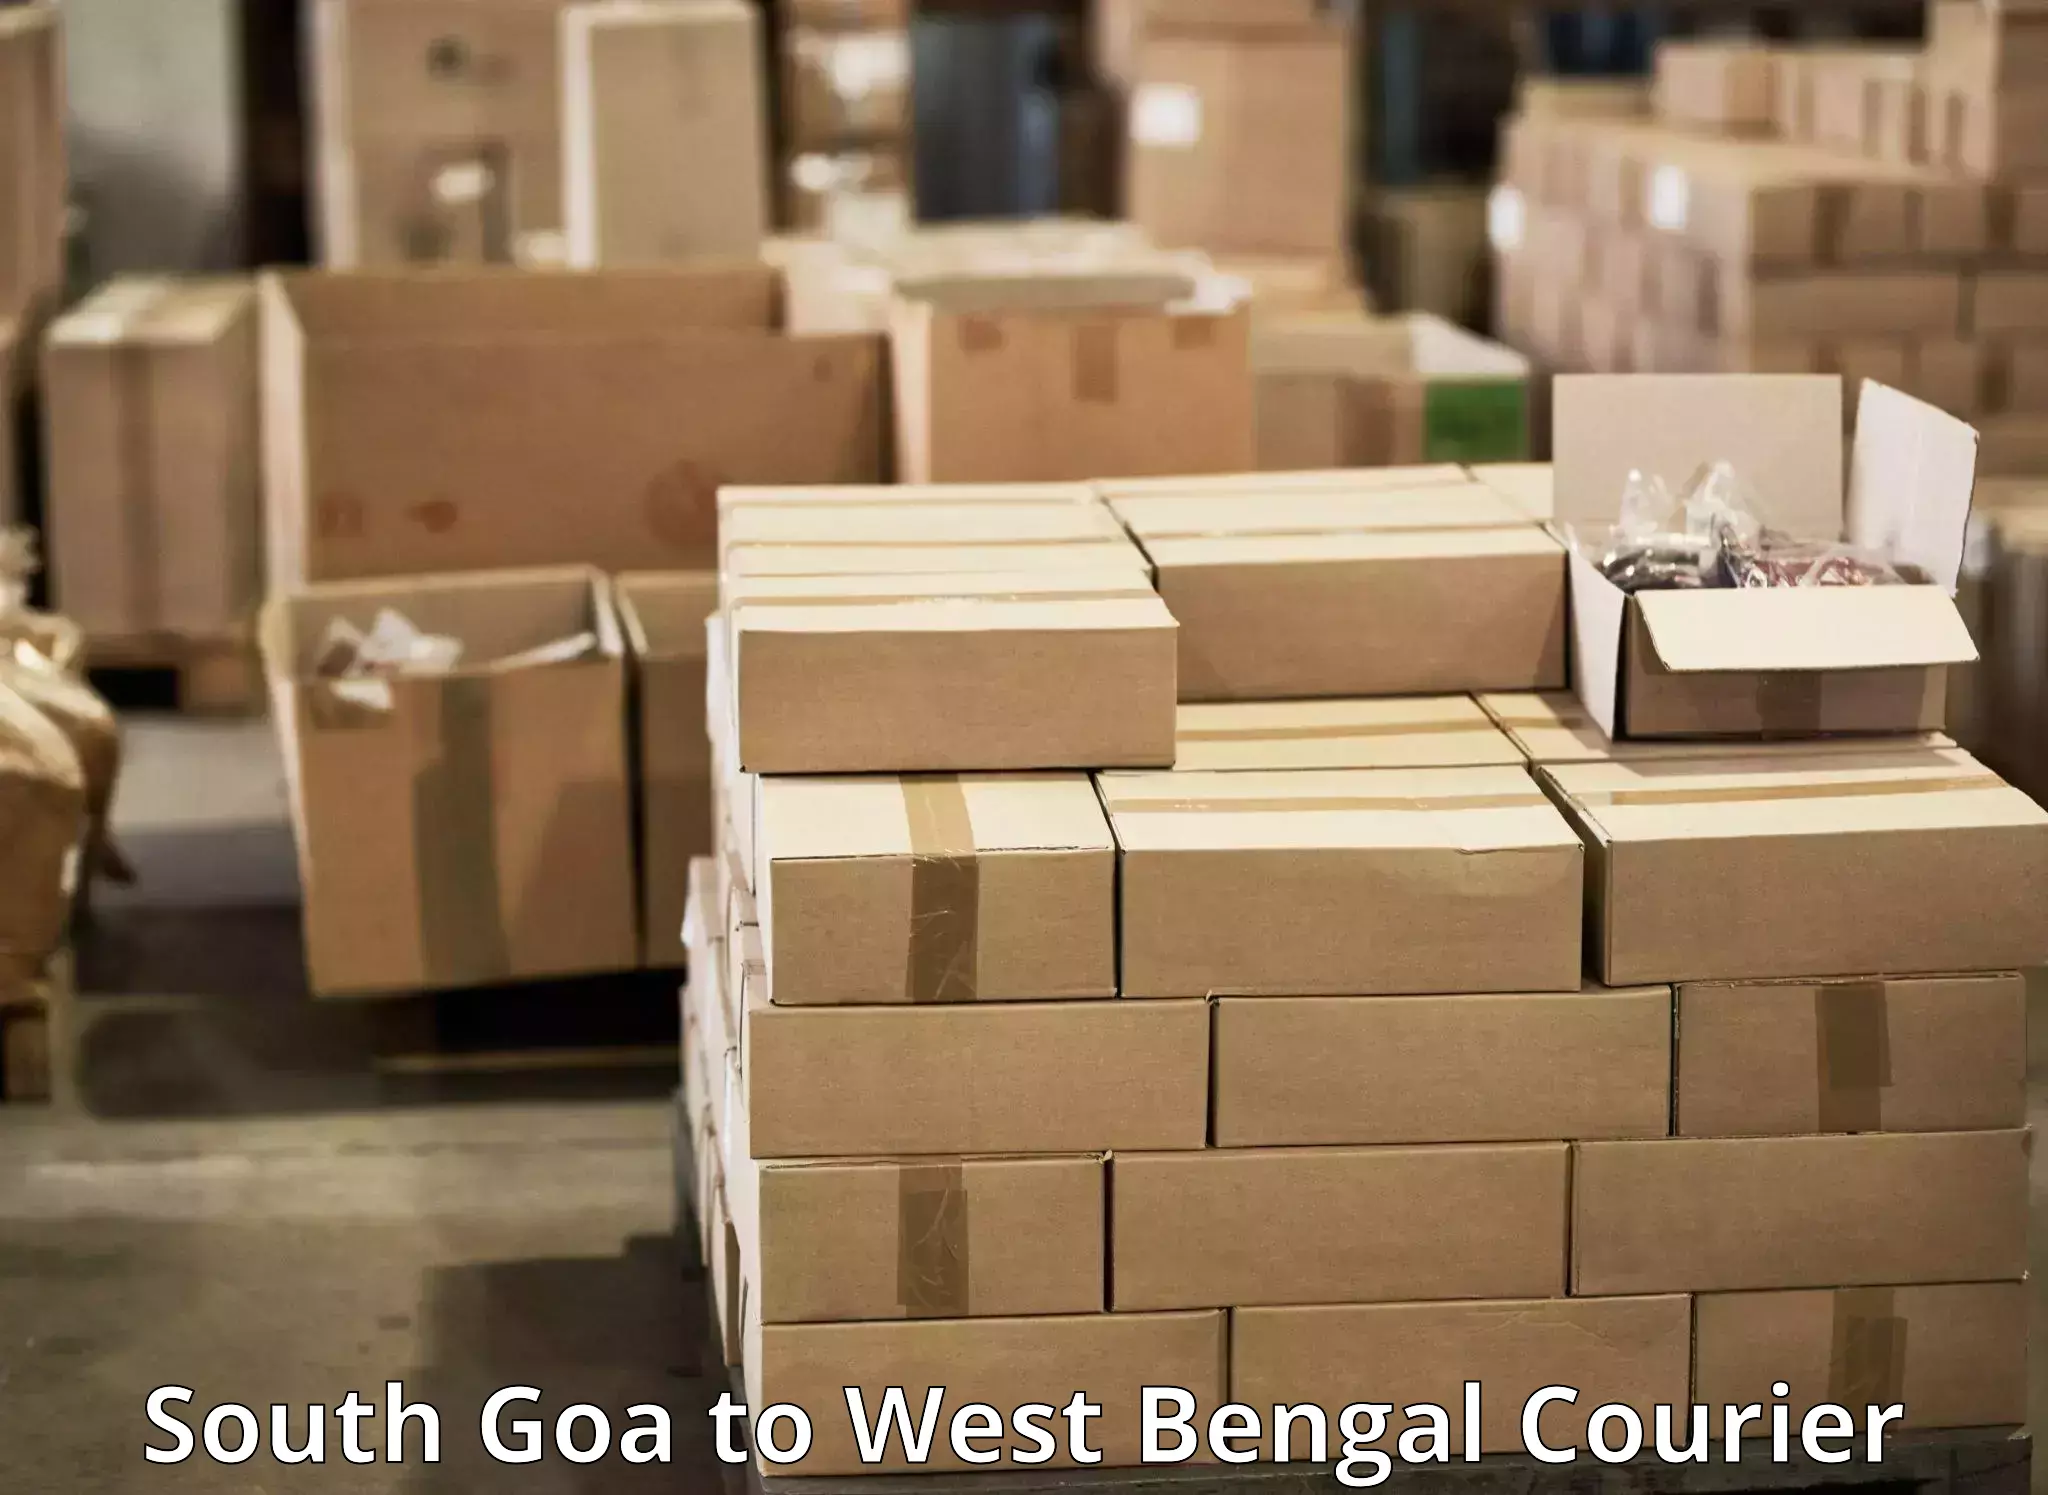 Flexible parcel services South Goa to Bankura